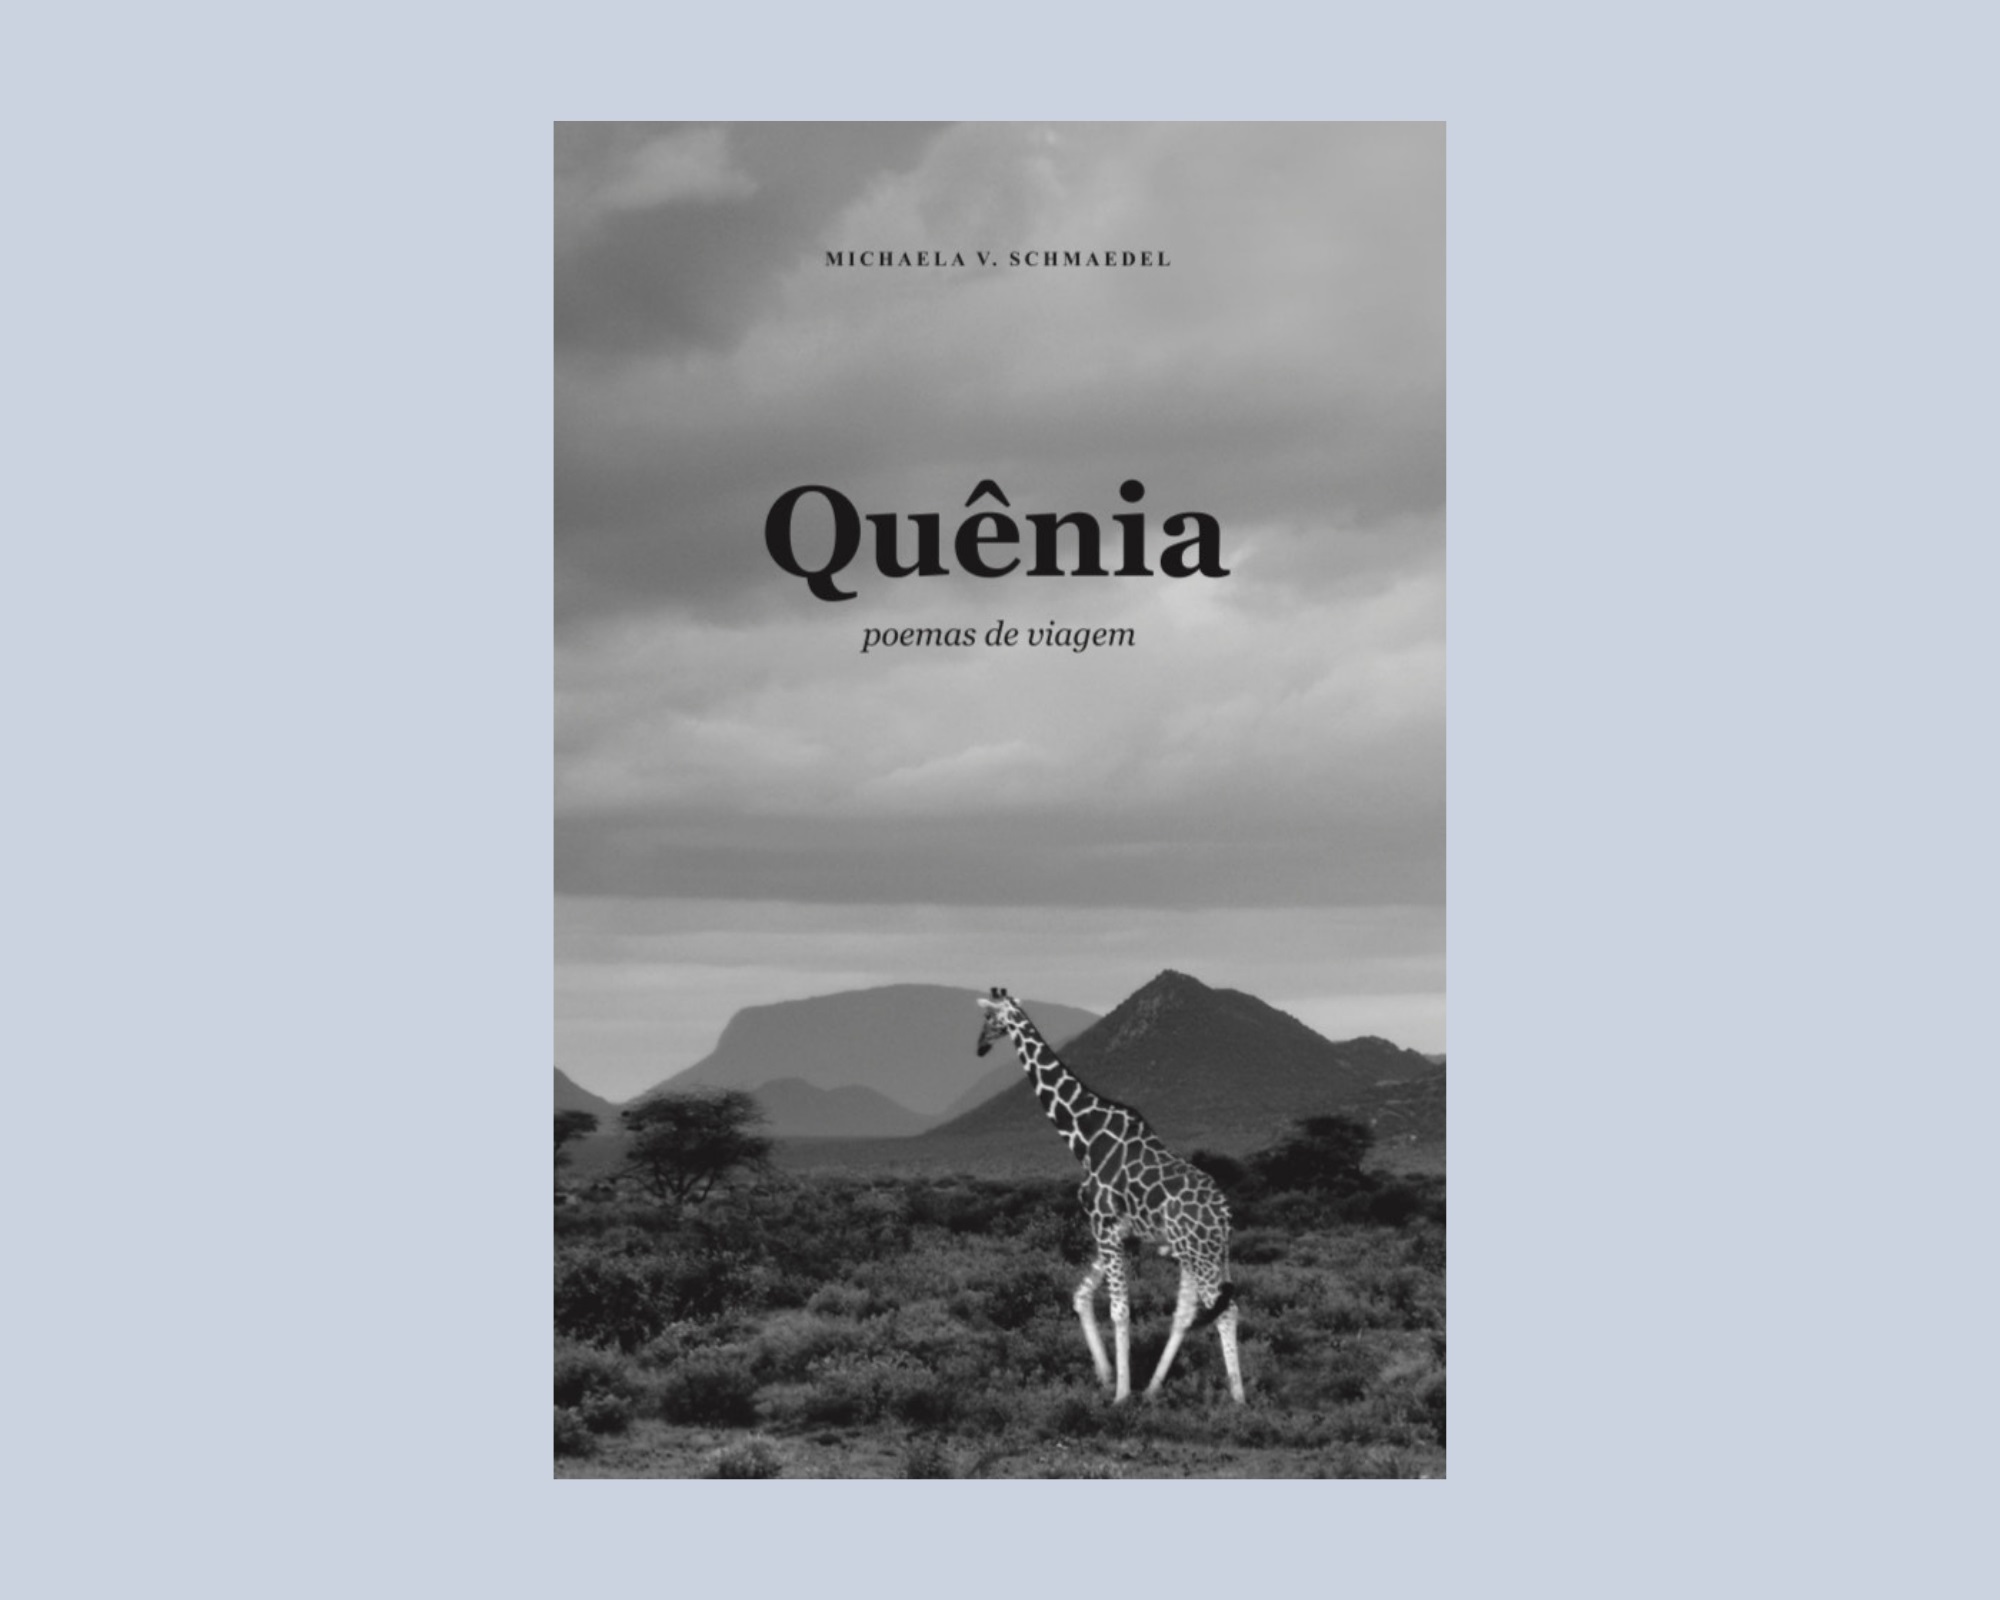 MICHAELA quenia - Livro de poemas 'Quênia' trabalha a imagem associativa para metaforizar a África | por Fernando Andrade